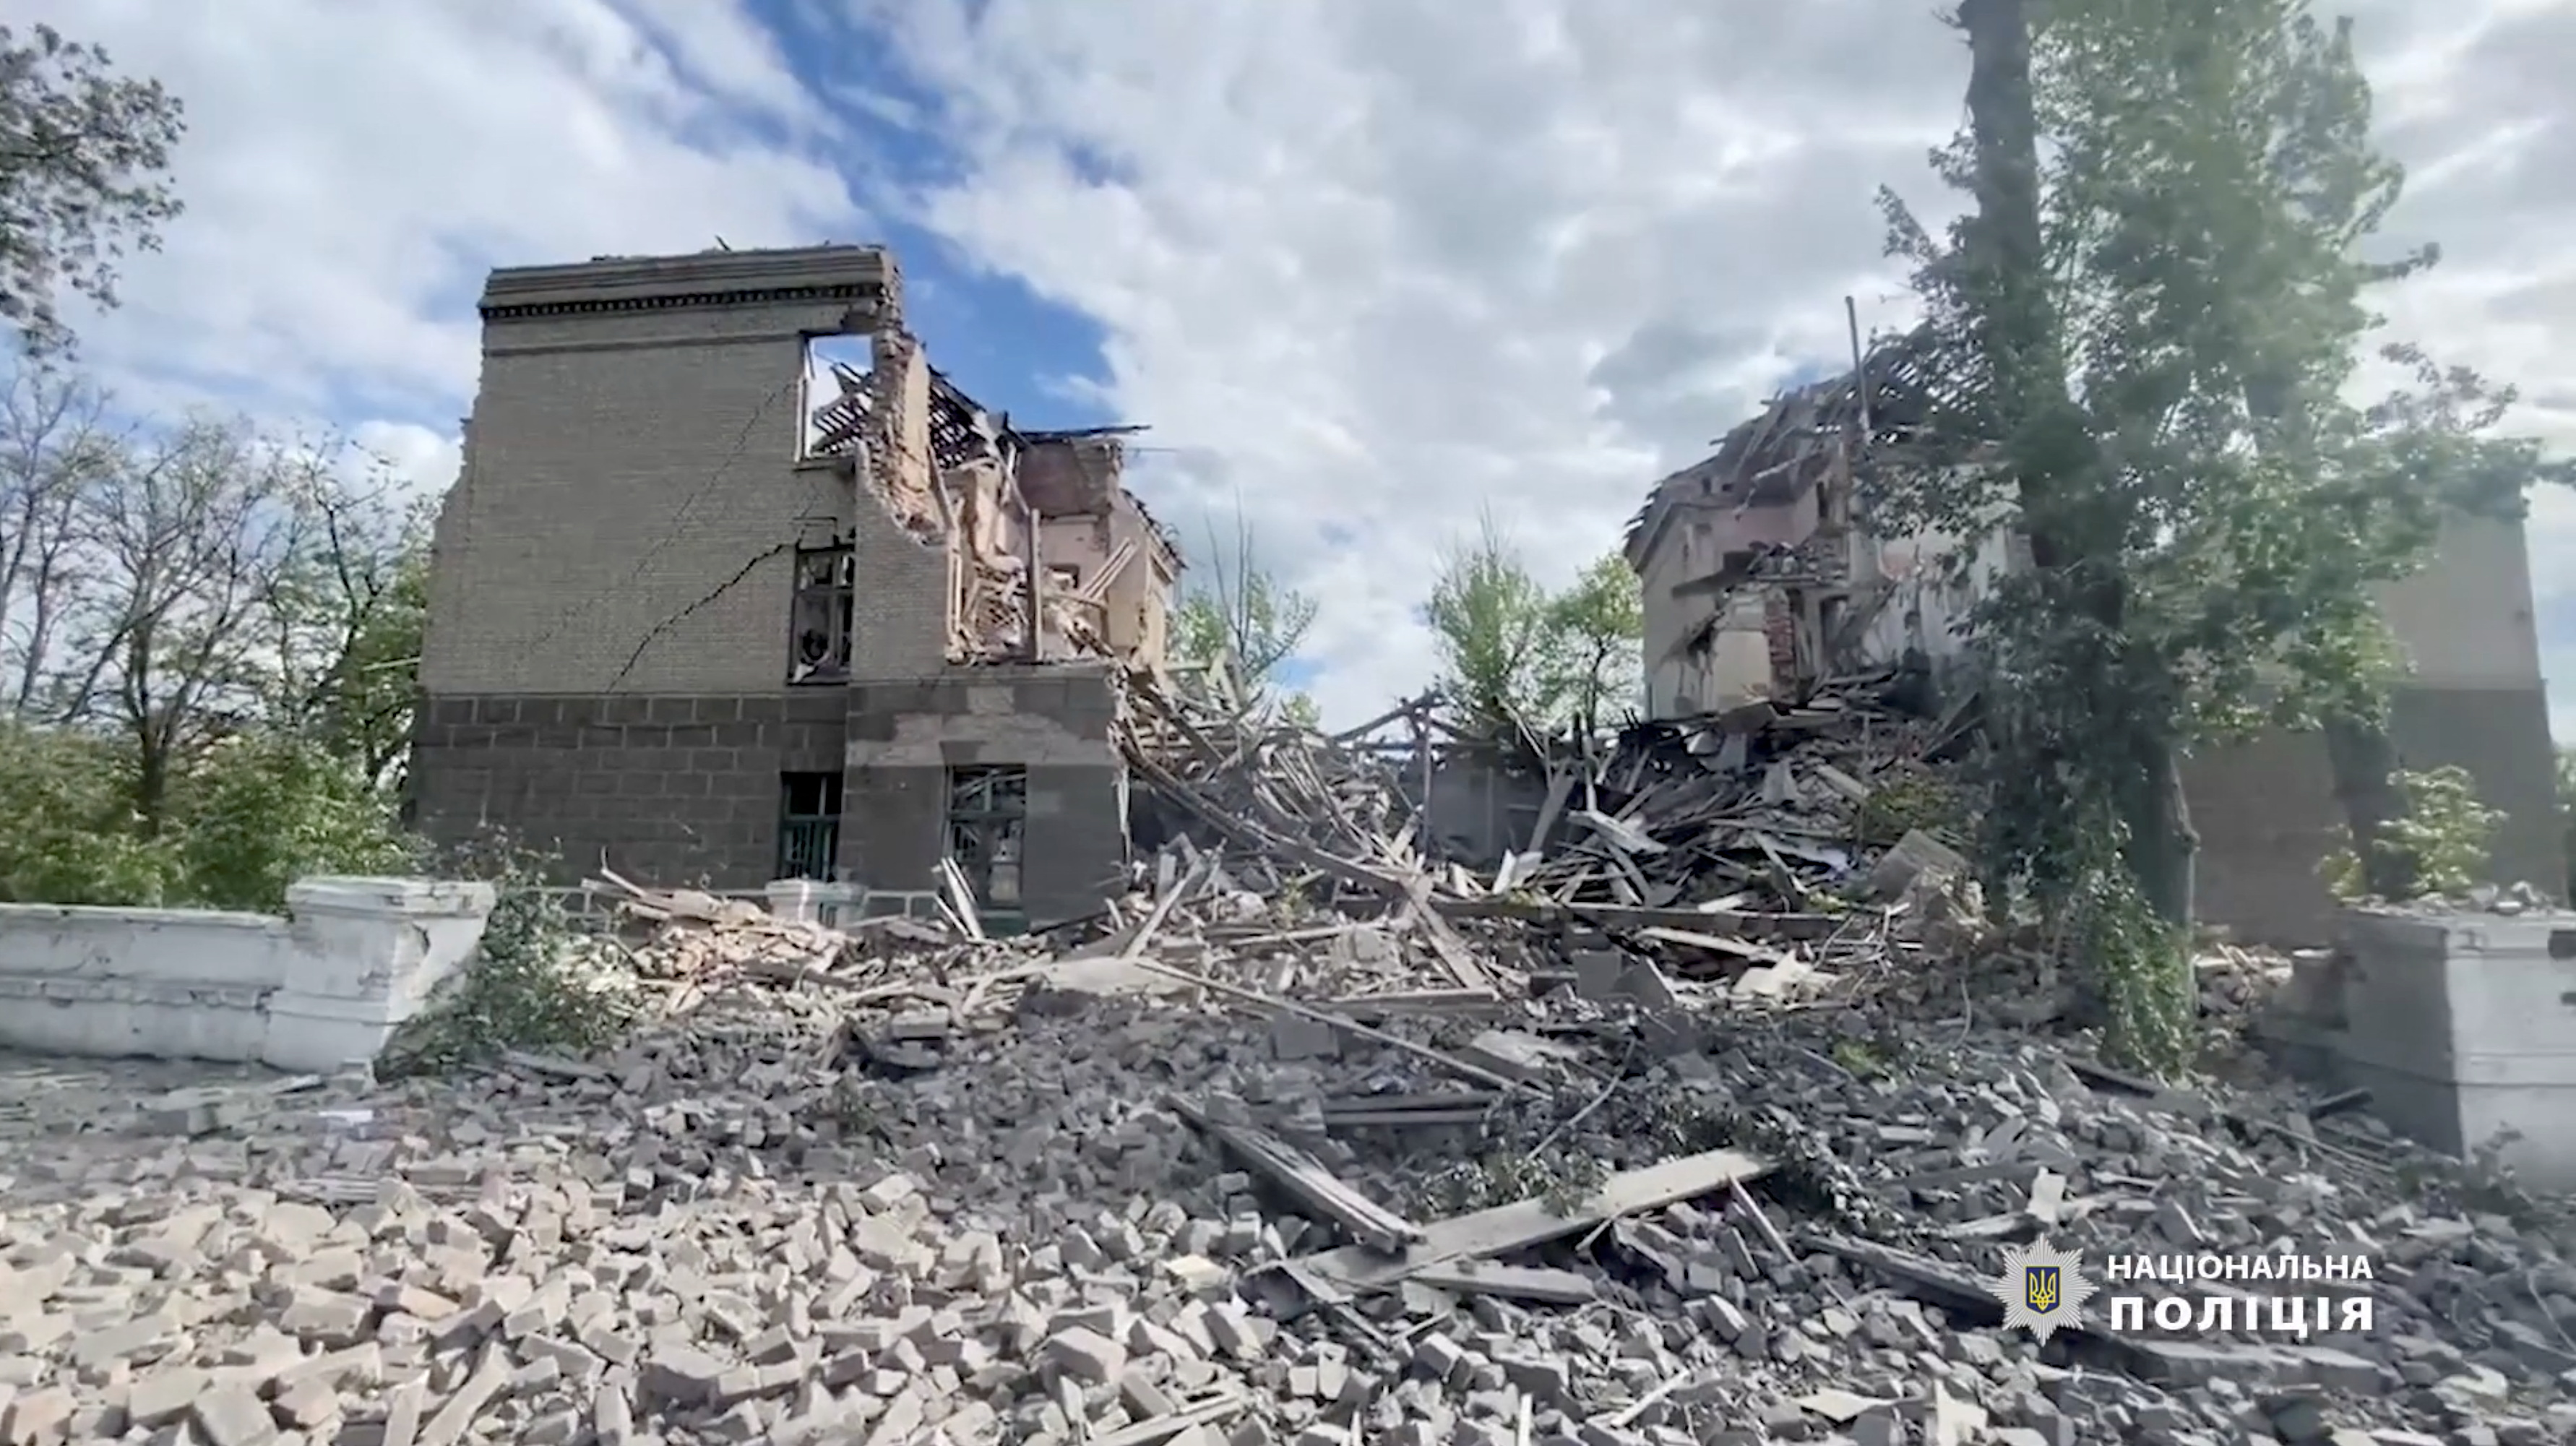 Building damaged due to air strike in Bakhmut, Donetsk Region